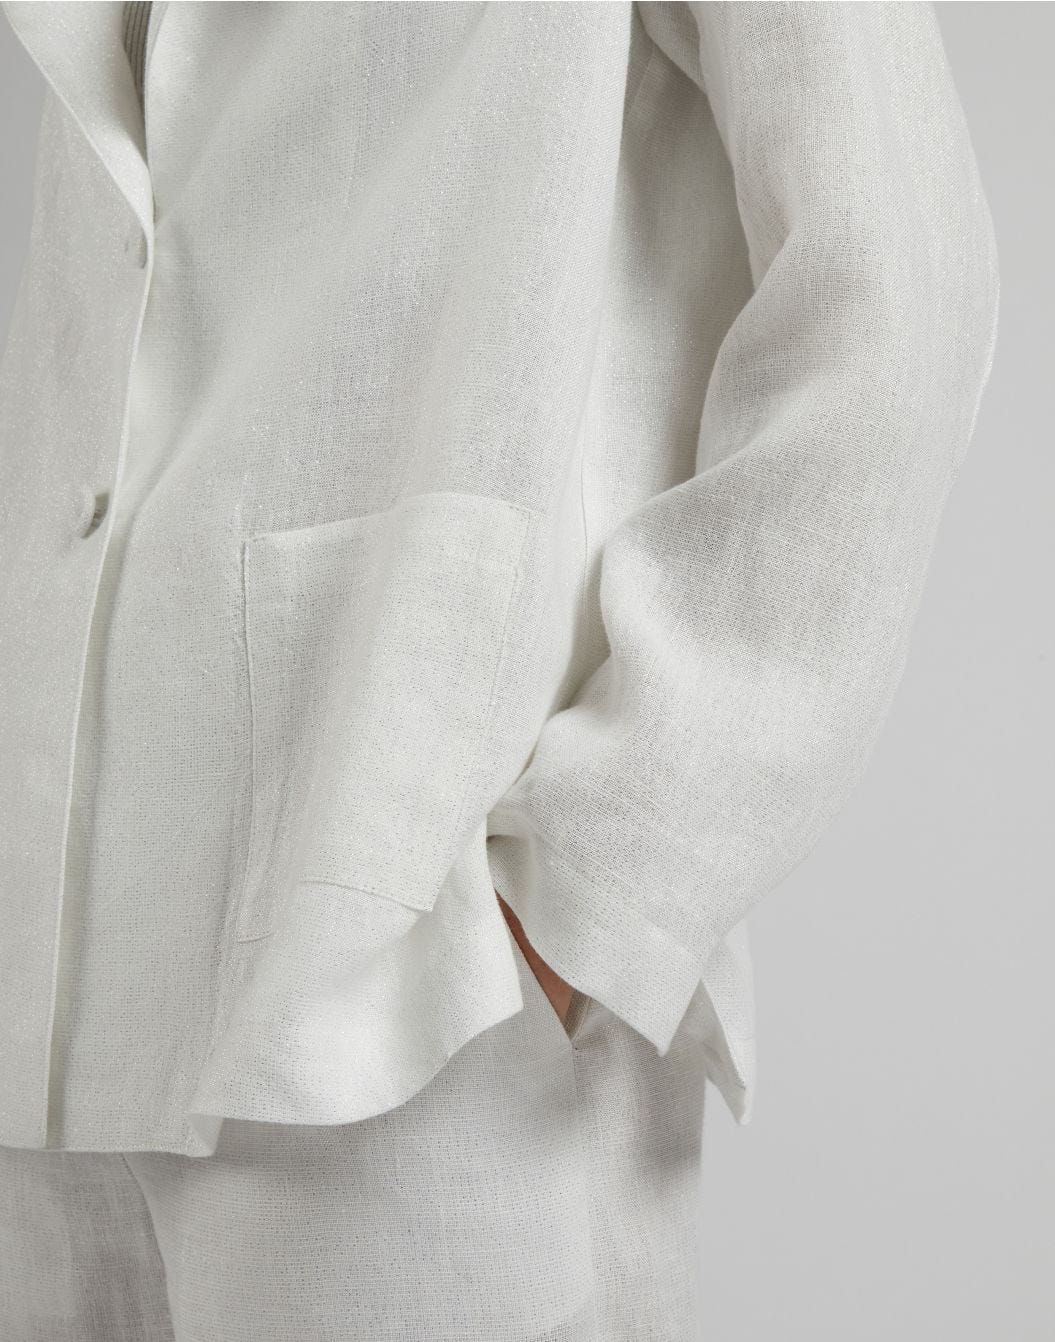 Veste à simple boutonnage, en lin lurex blanc et argenté